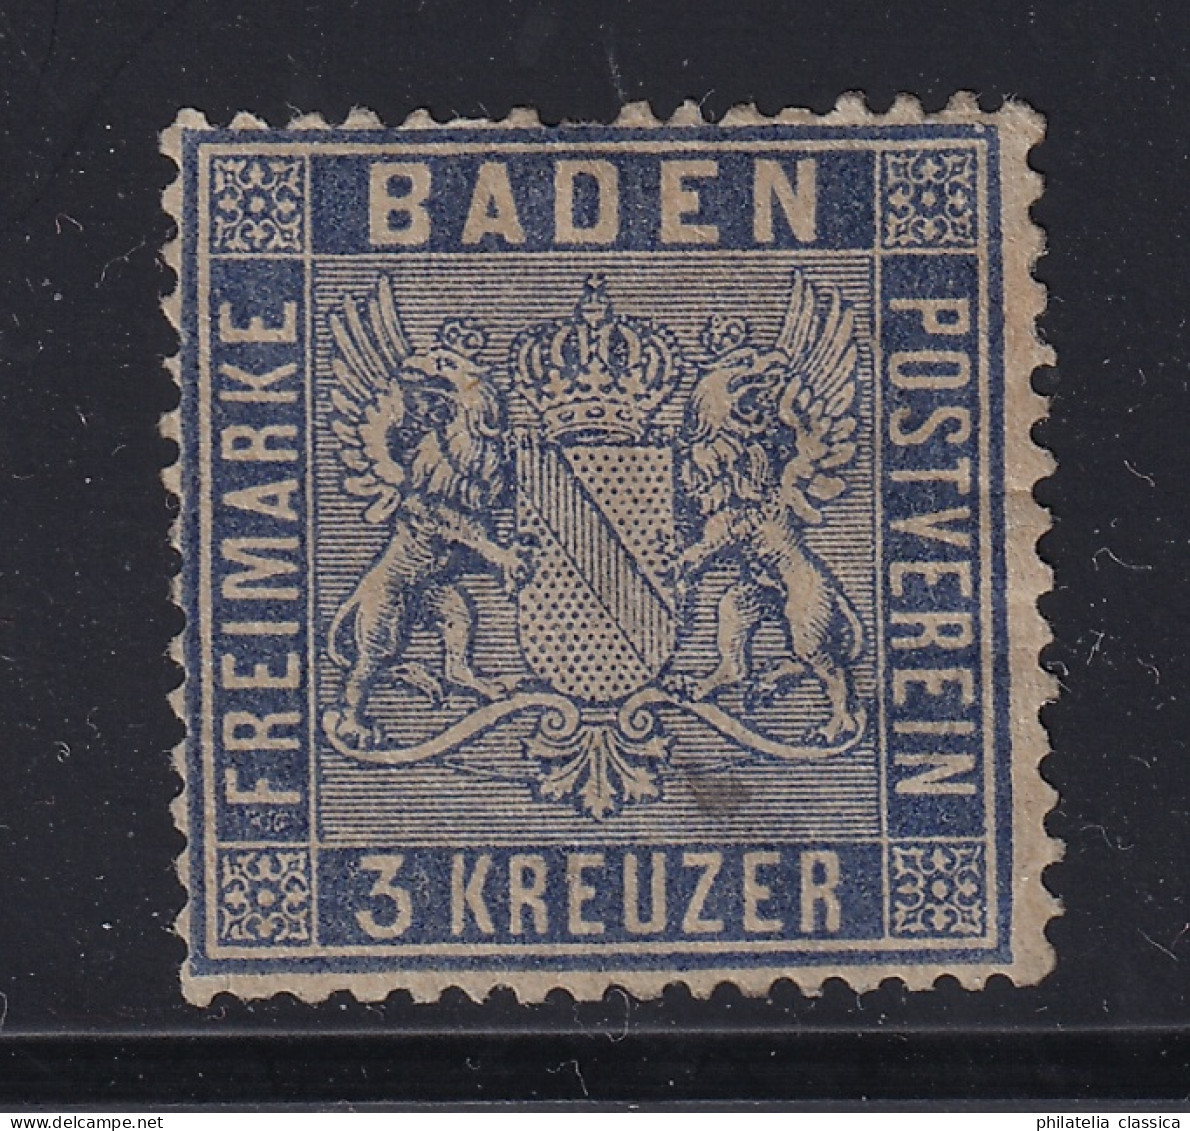 BADEN  10 C,  3 Kr. Veilchenblau, Seltene Farbe, Originalgummi, Geprüft 550,-€ - Ungebraucht